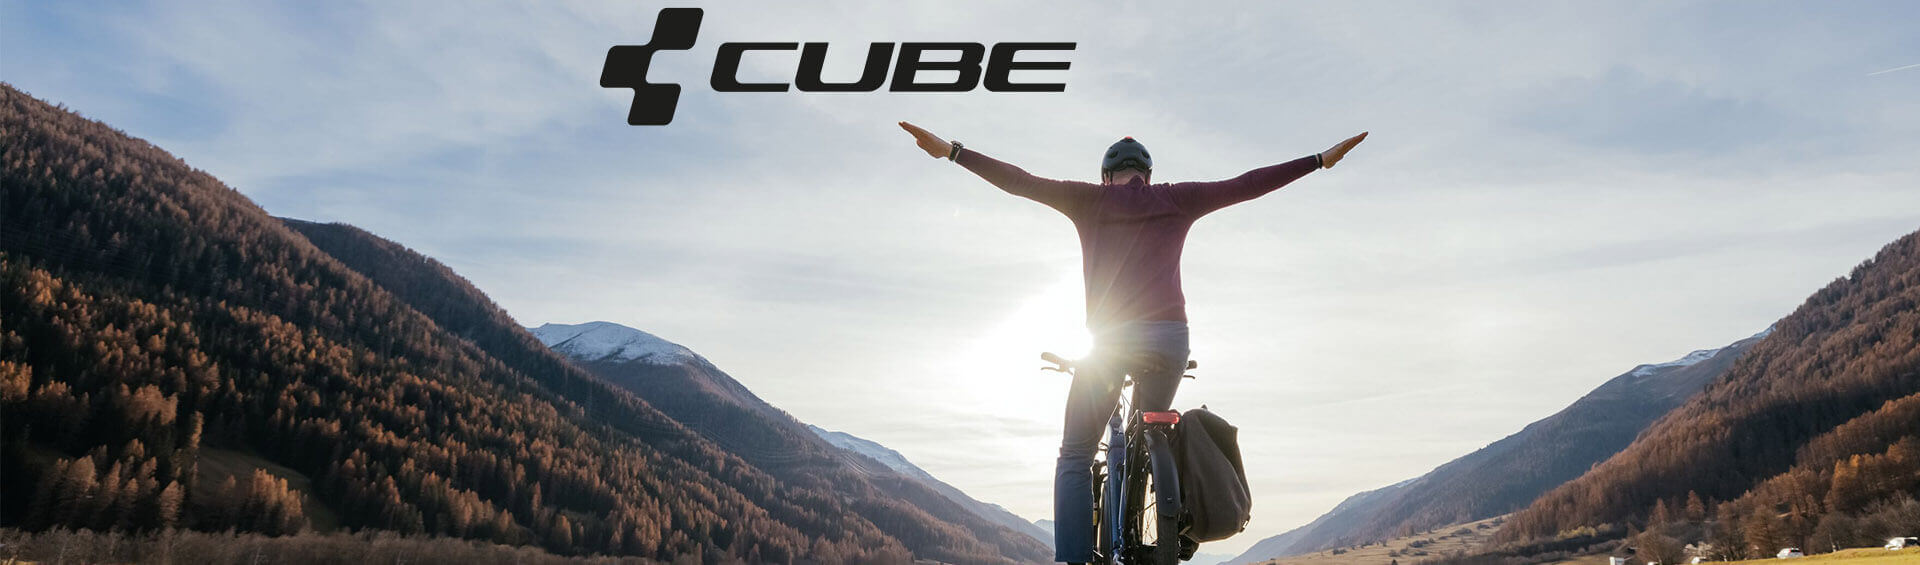 Die Cube Touring One Serie jetzt bei Fahrrad XXL kaufen